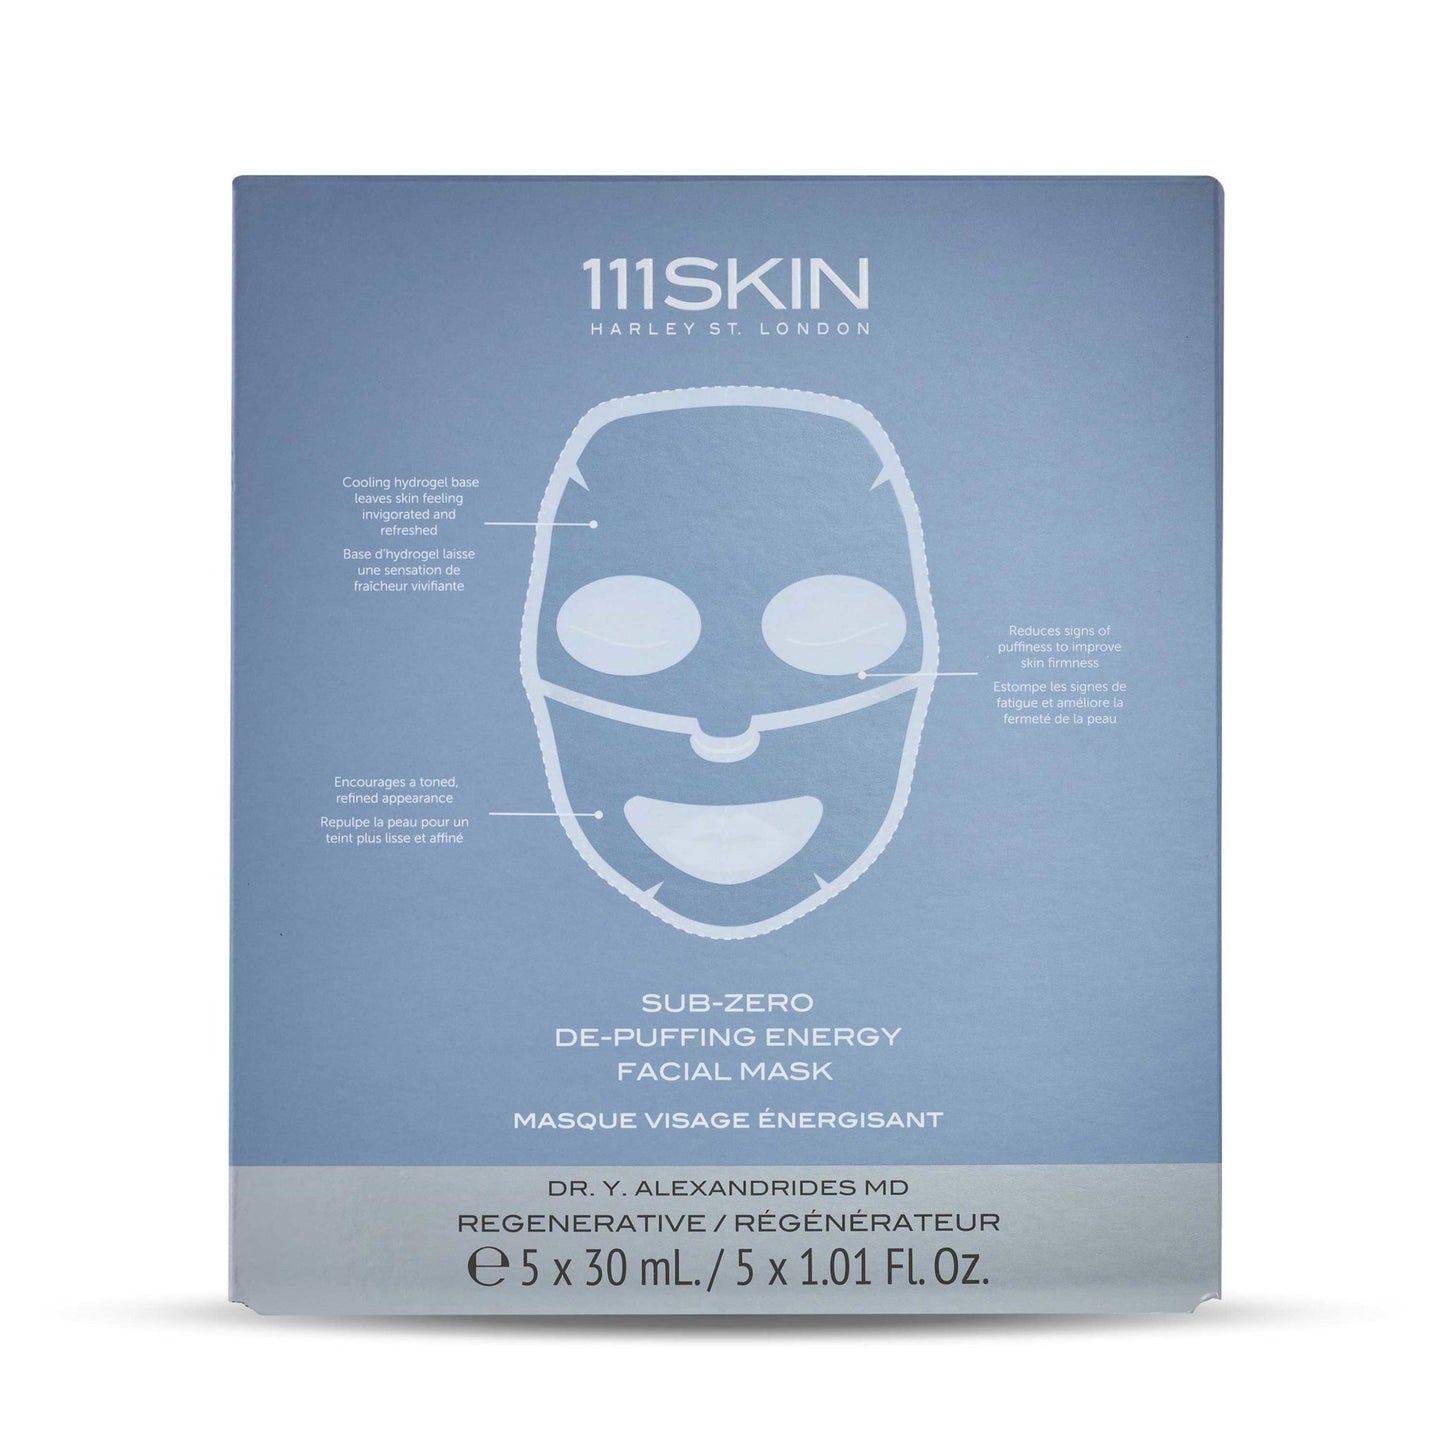 Sub-Zero De-Puffing Energy Facial Mask - 111SKIN UK